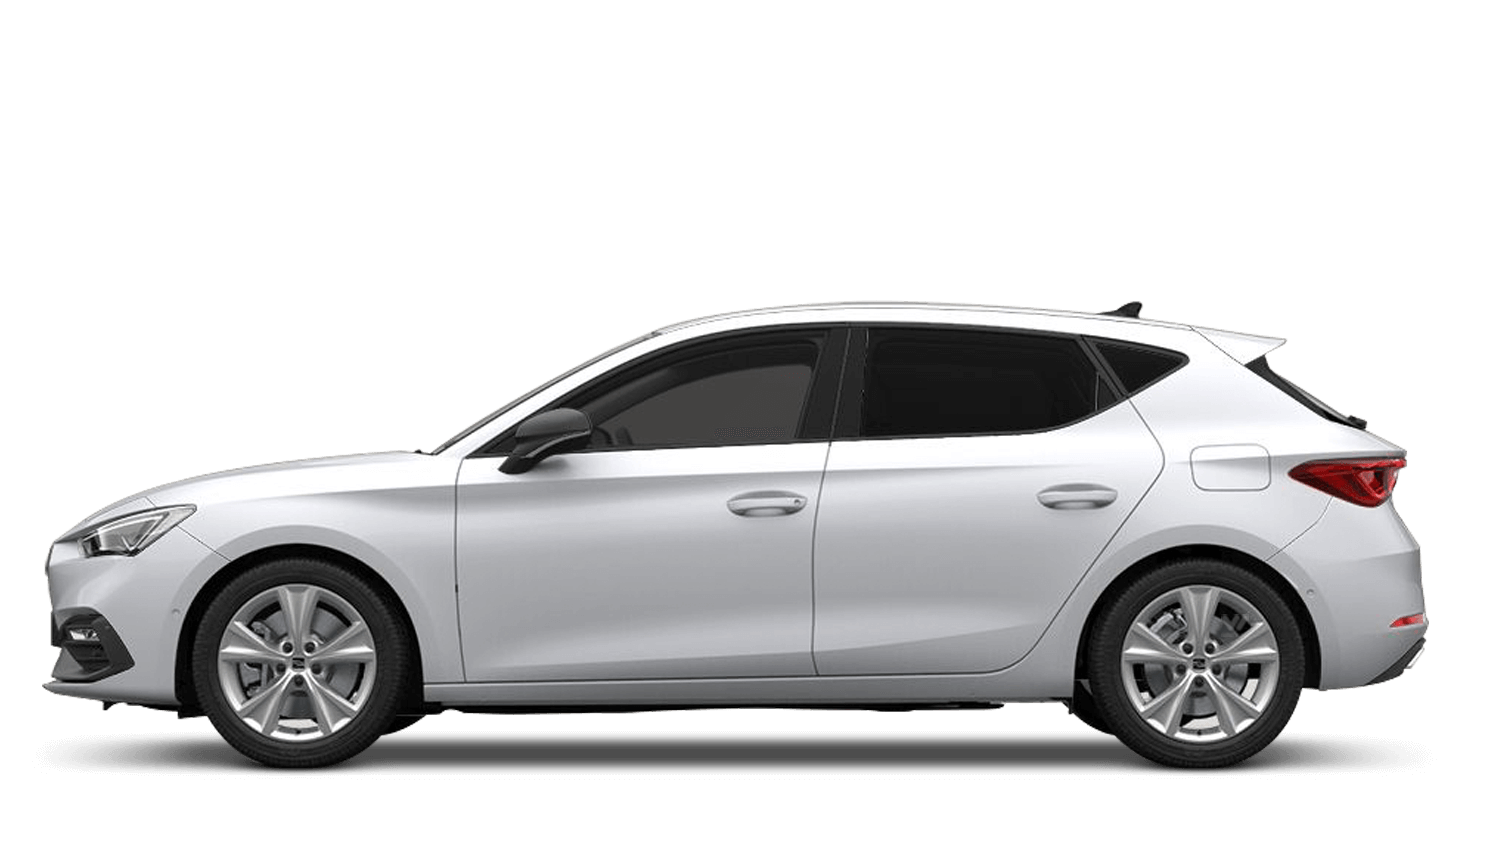 Nevada White (Metallic) SEAT Leon